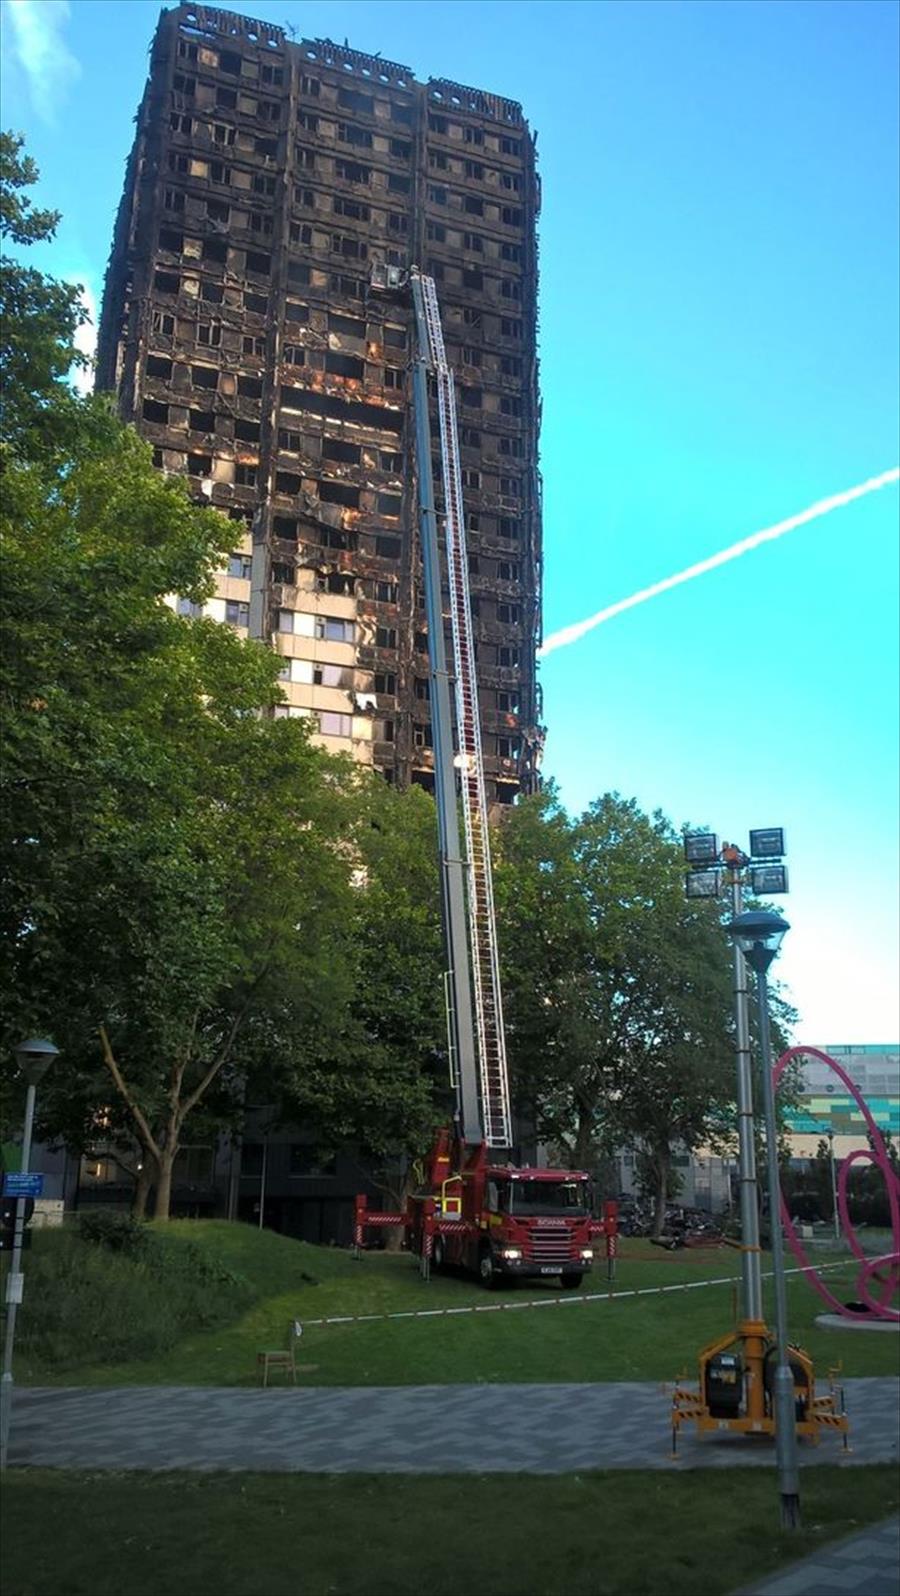 الشرطة البريطانية تنشر صورًا جديدة لكارثة برج «غرينفيل»